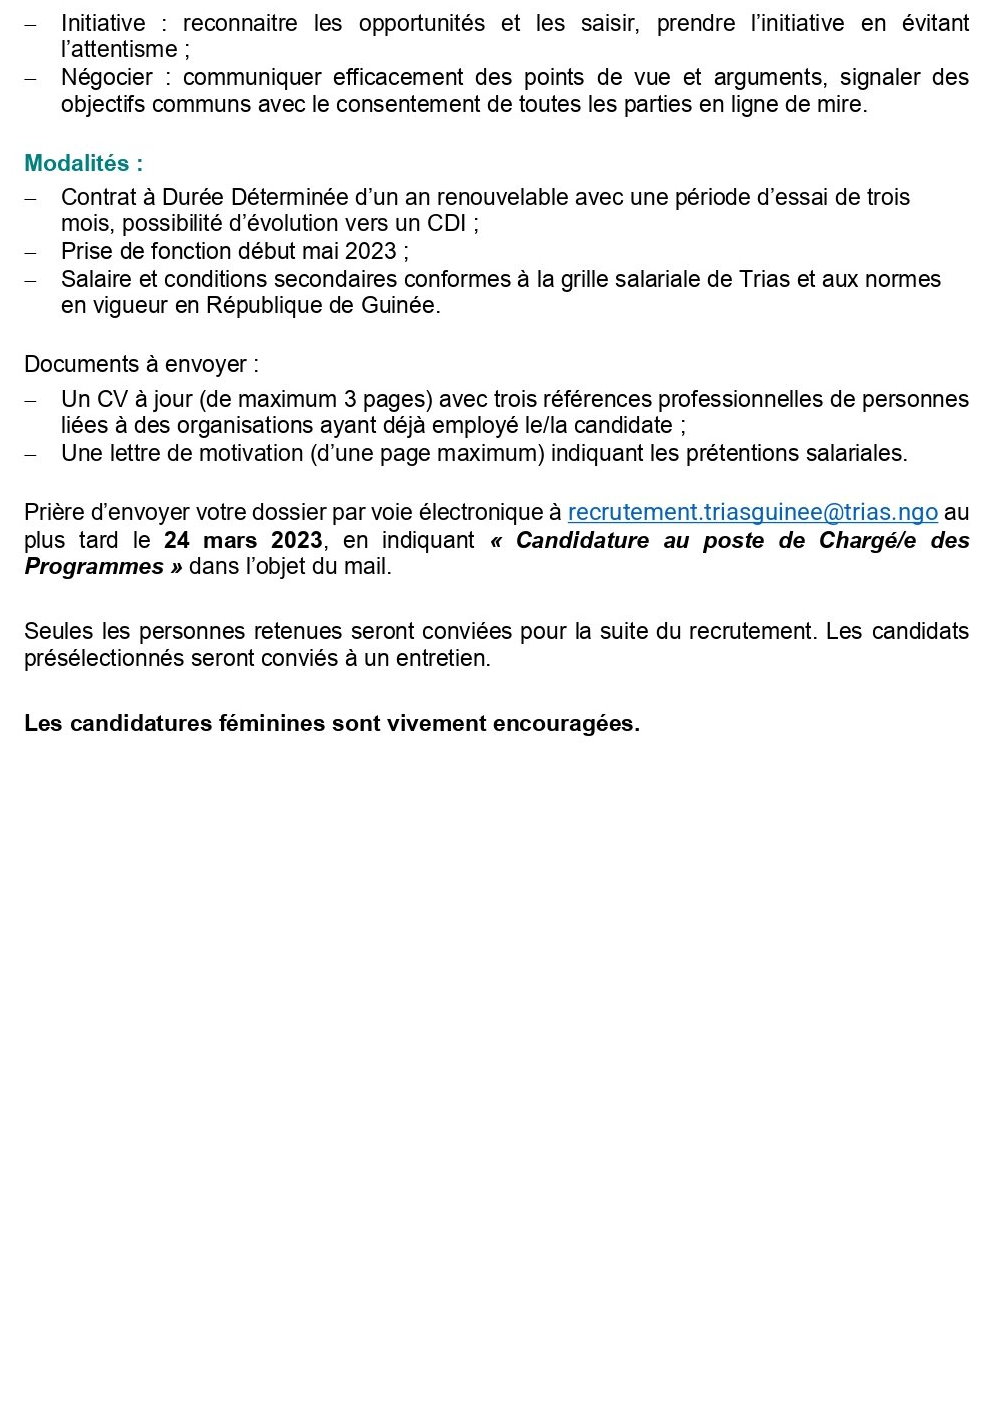 Avis de recrutement Chargé/e des Programmes Guinée | page 3